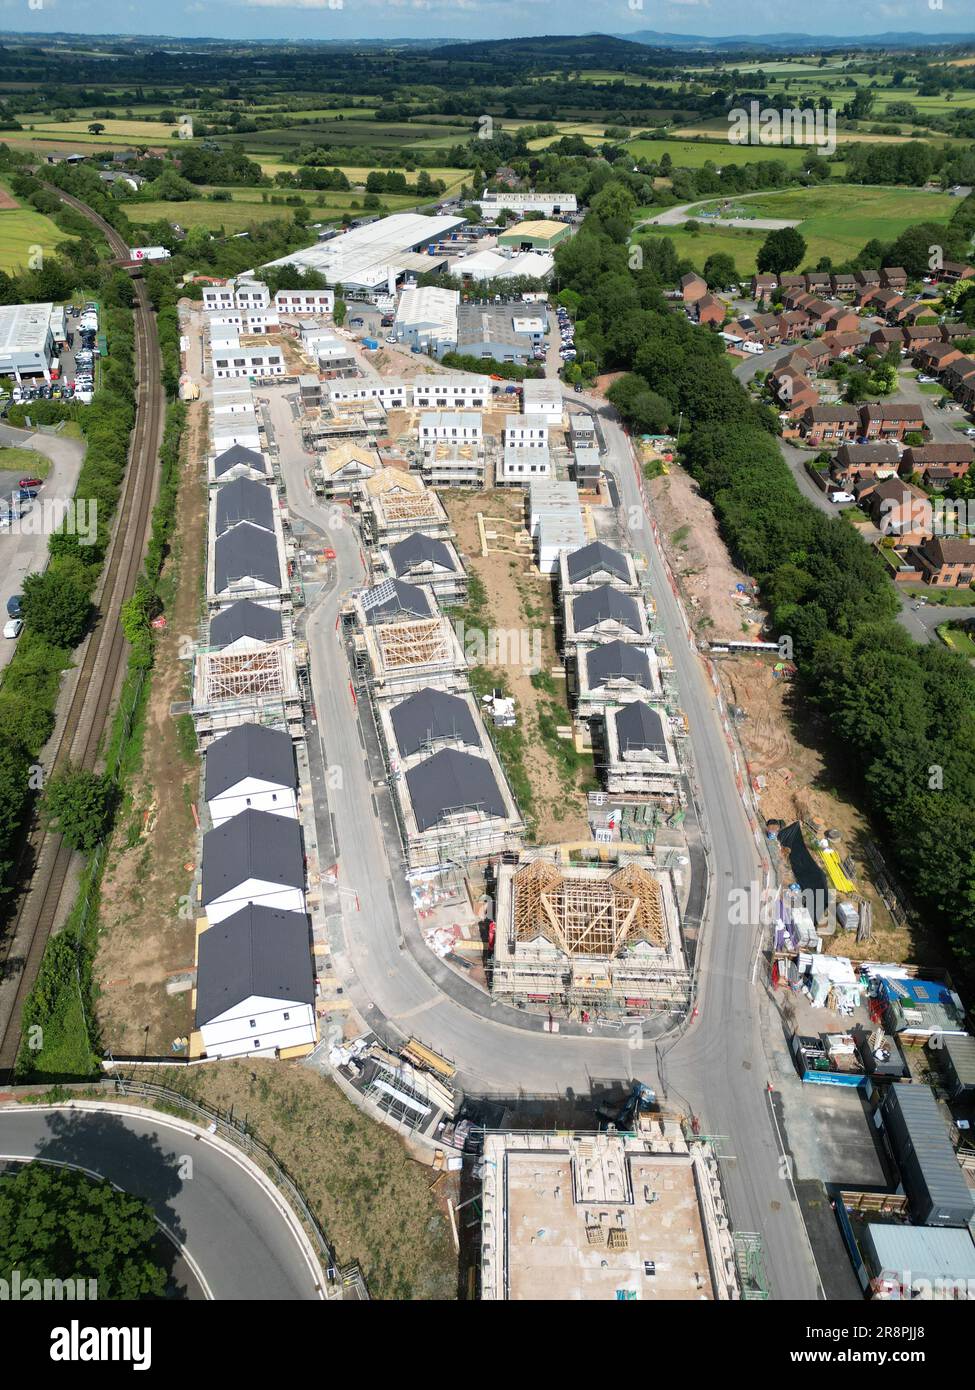 Hereford UK sito di costruzione di alloggi modulari di 120 case in affitto a prezzi accessibili e proprietà condivisa da Stonewater su un sito di sviluppo brownfield 23 giugno Foto Stock